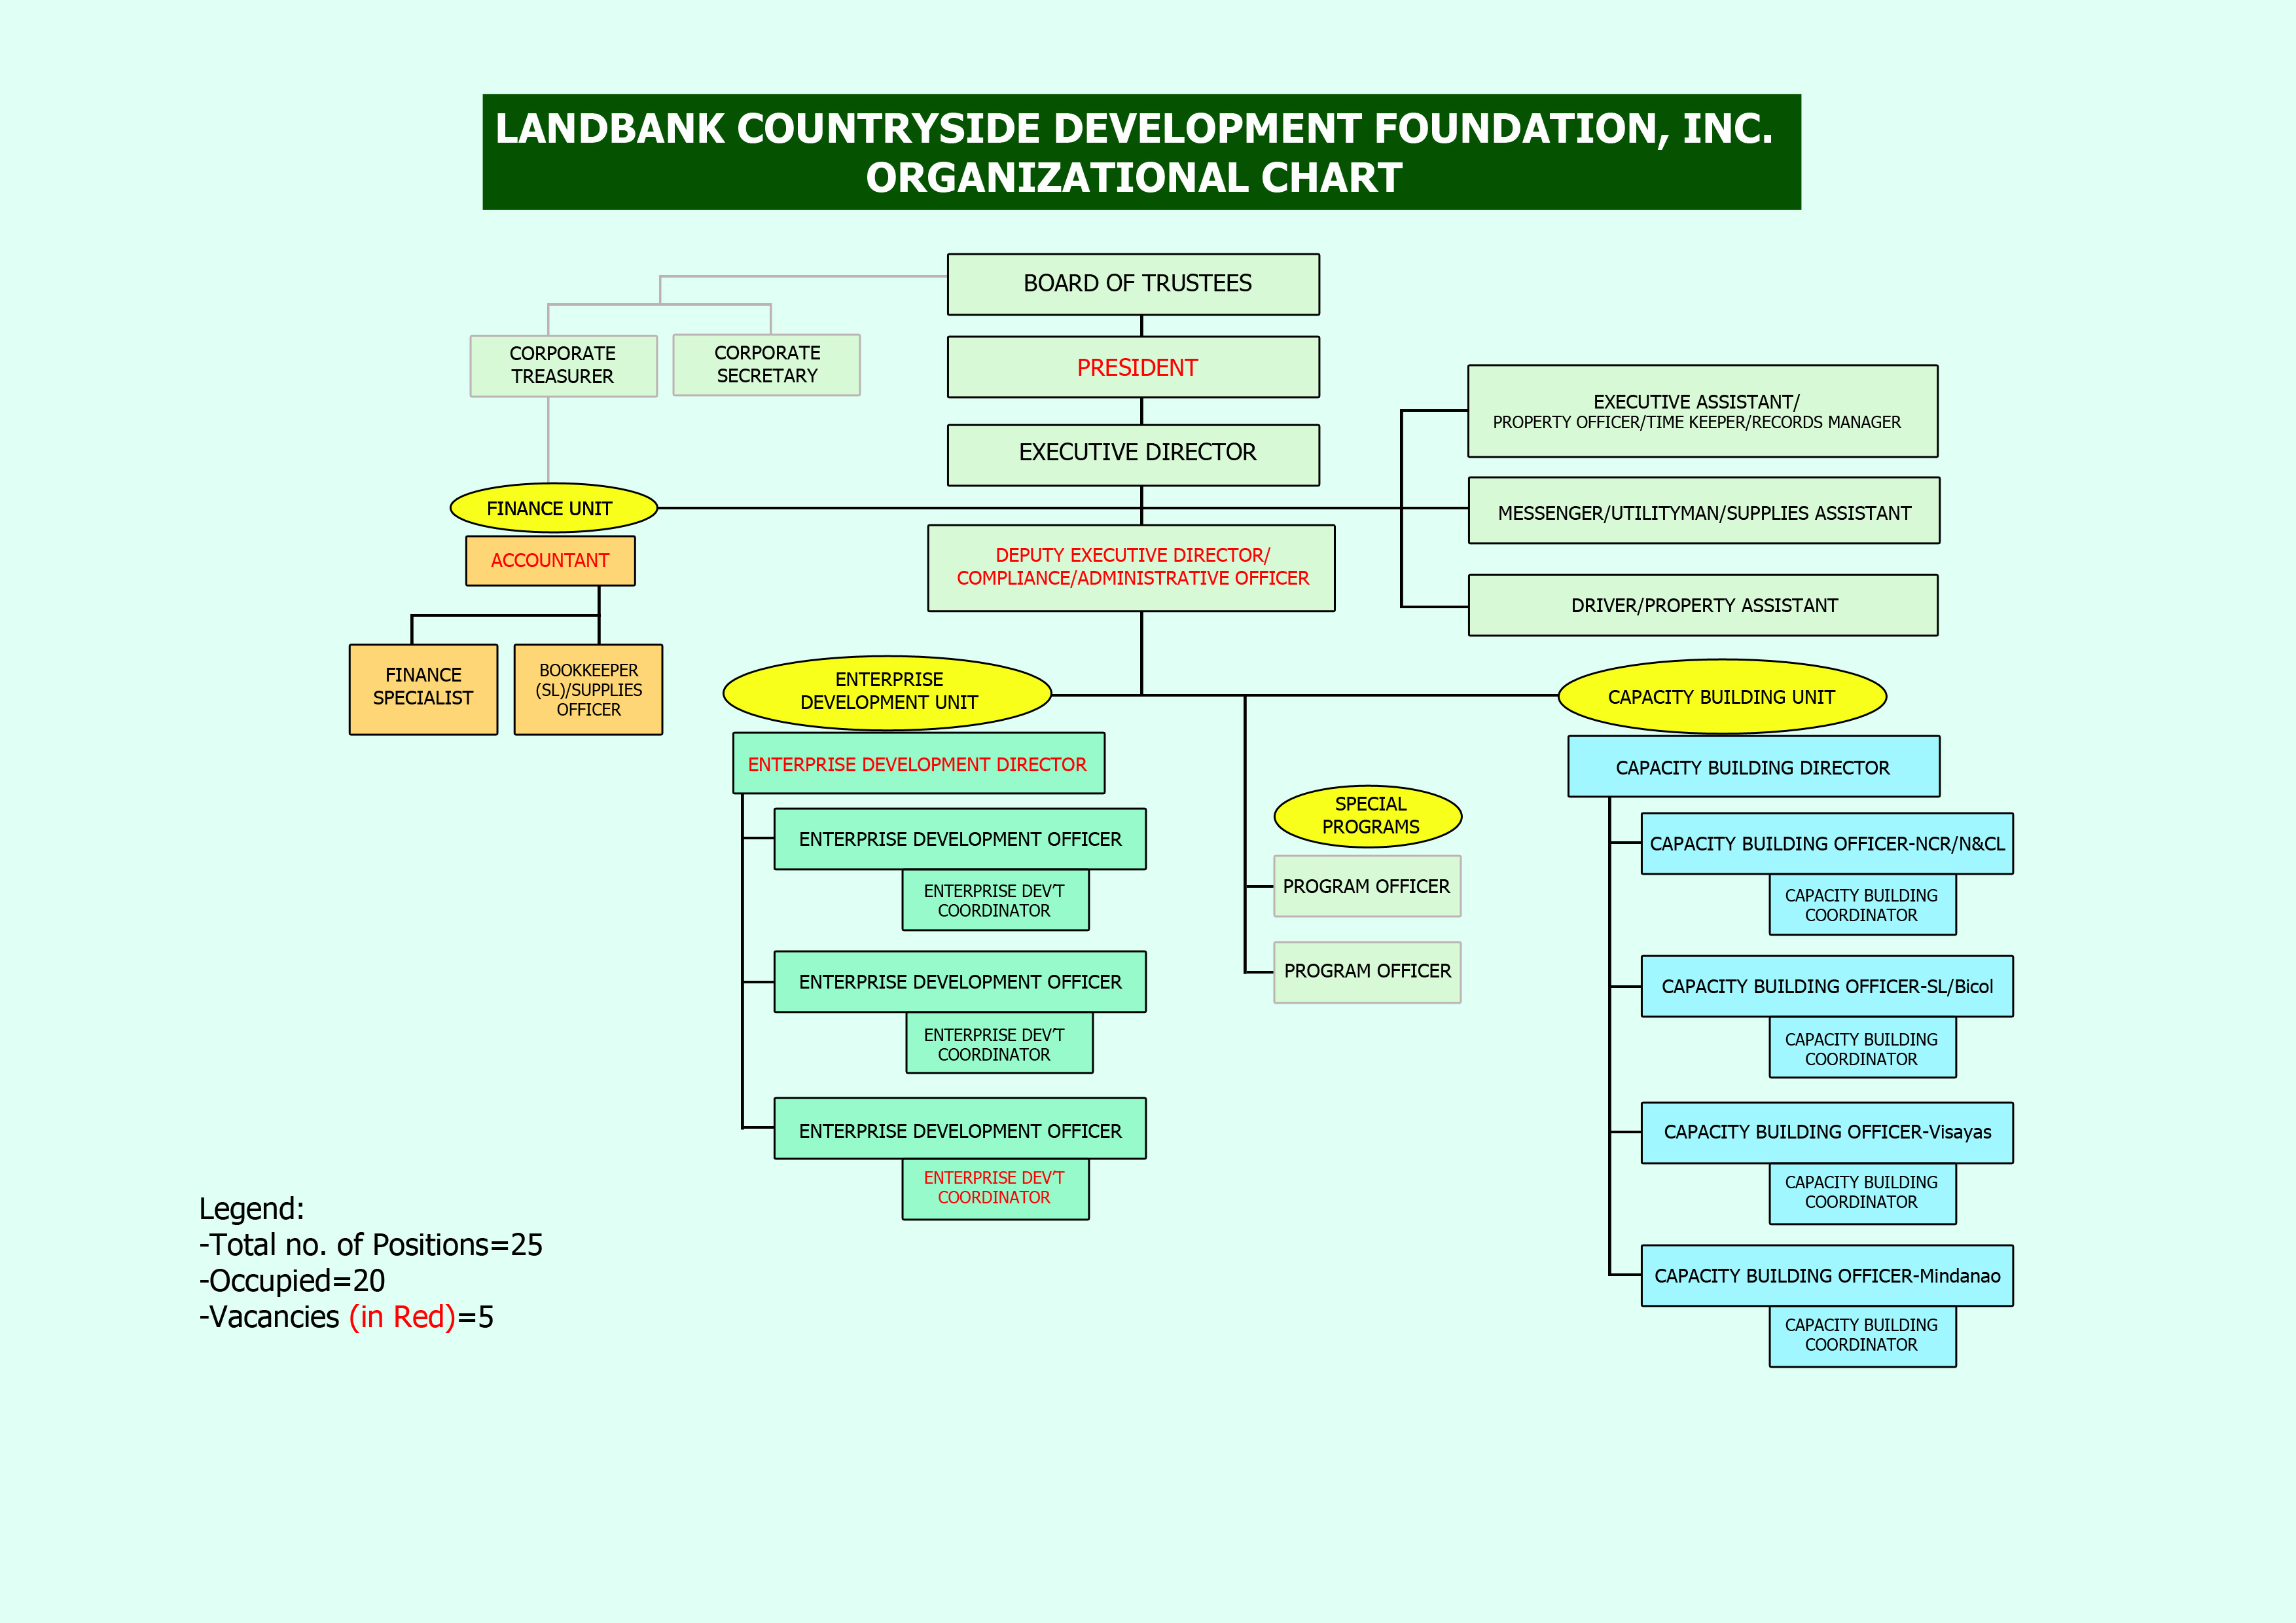 LCDFI Organizational Chart